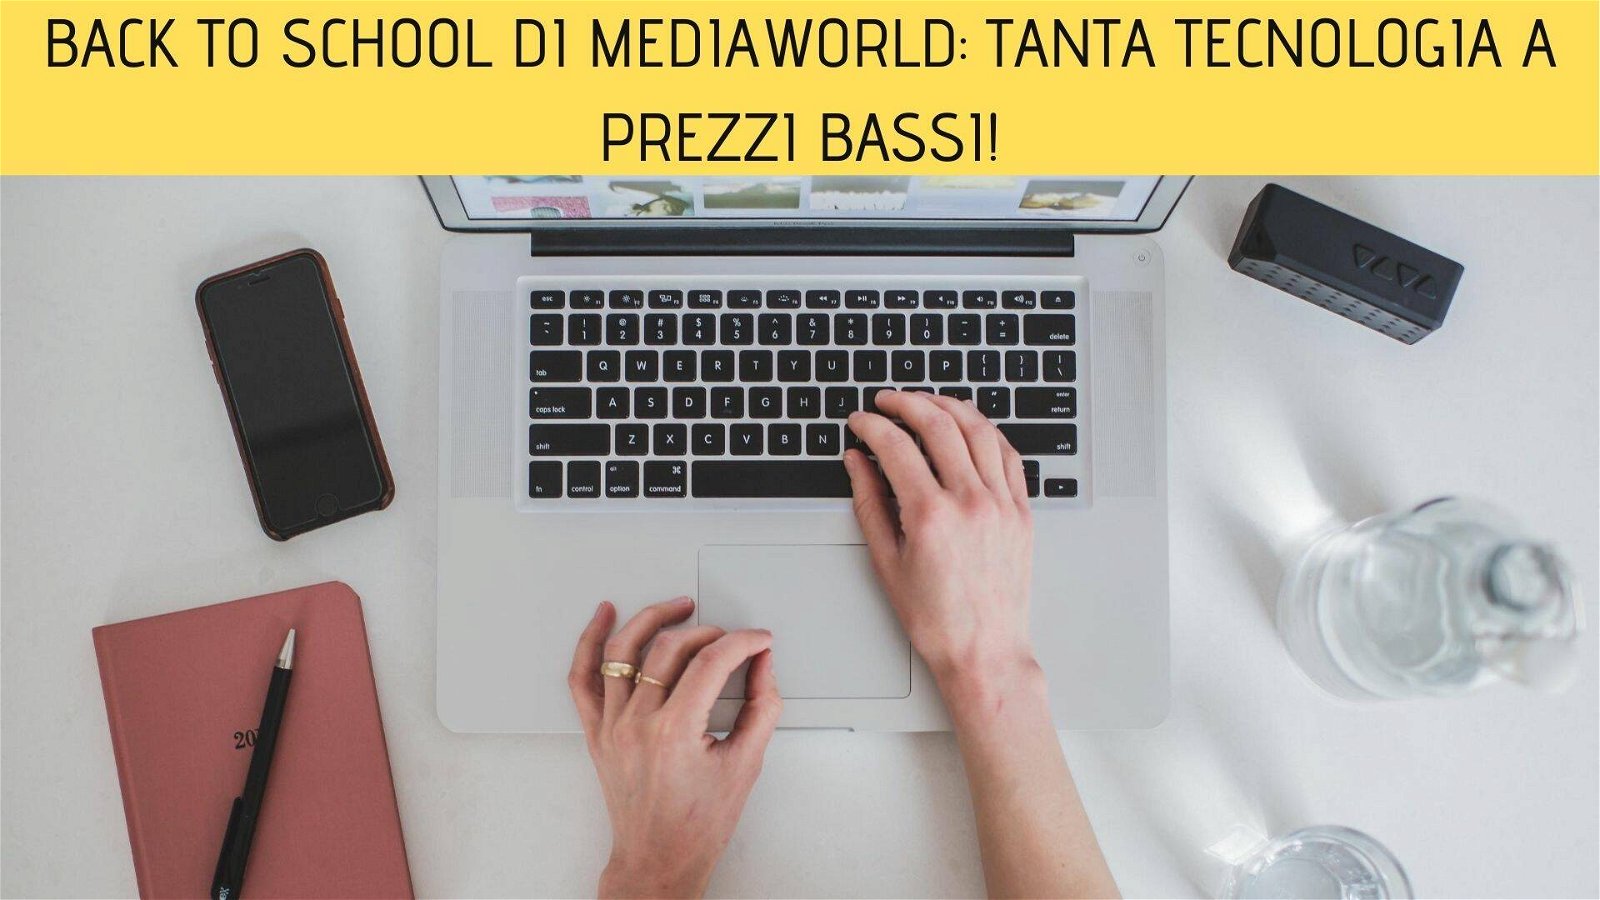 Immagine di [ULTIMI GIORNI] Back to School di Mediaworld: tanta tecnologia a prezzi bassi!